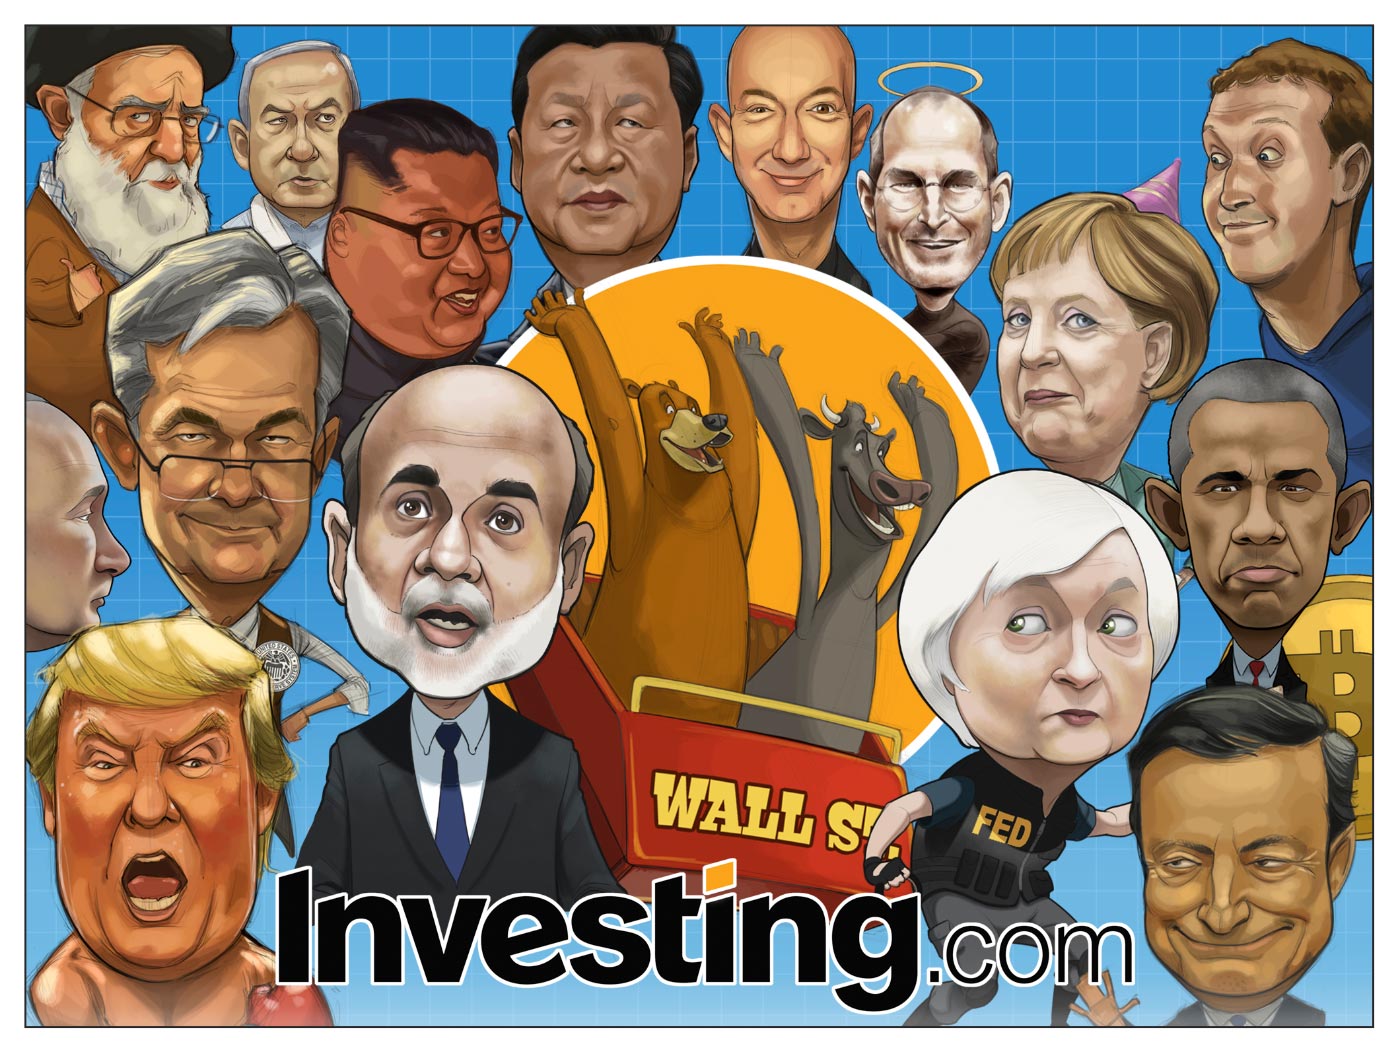 Karykatury Investing.com osiągnęły ważny kamień milowy – 250. wydanie. Jaka jest Twoja ulubiona postać?